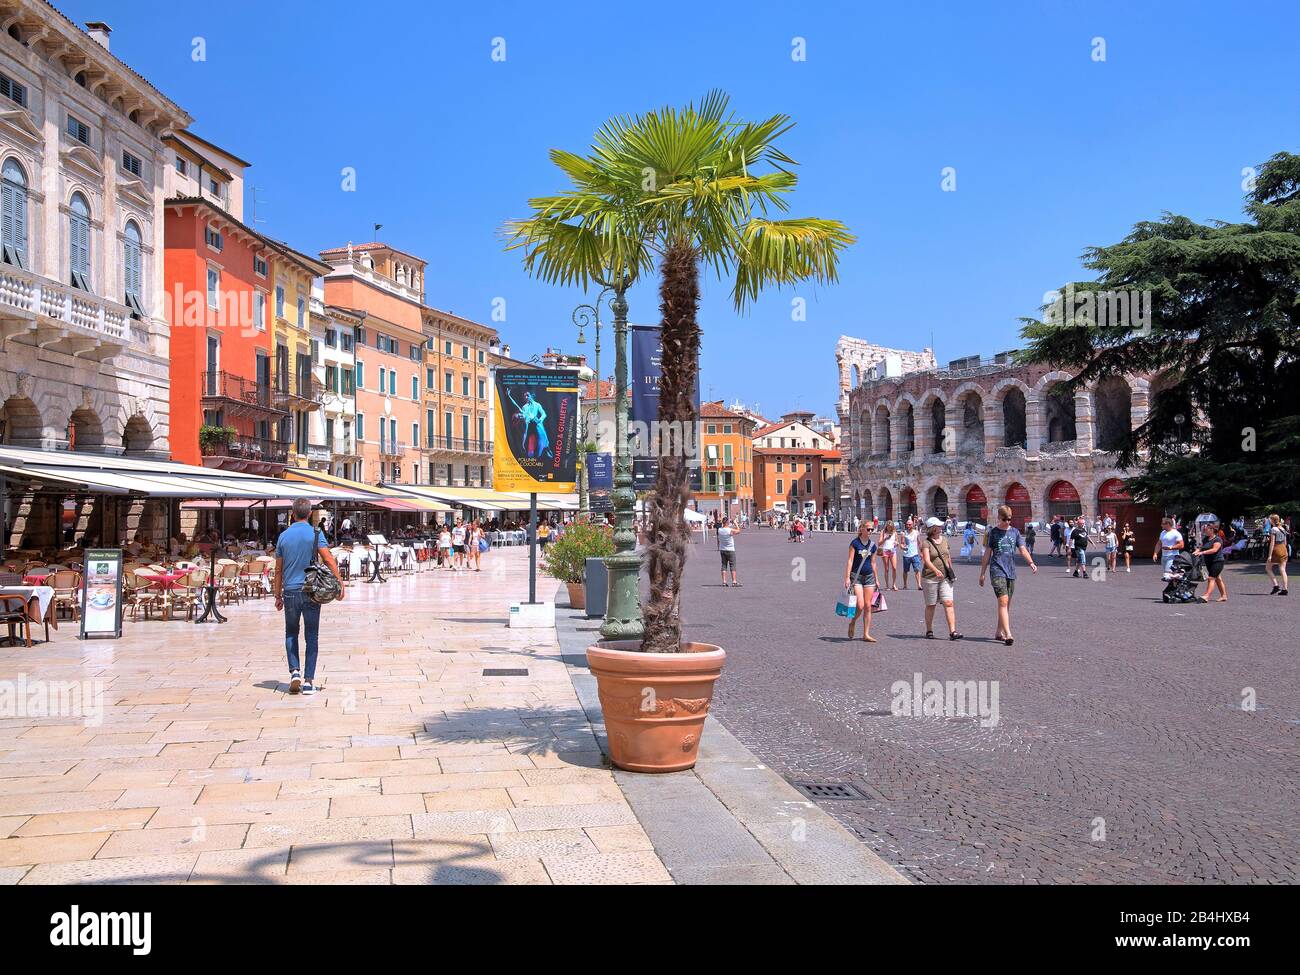 Piazza Bra mit Palazzi und Amphitheater-Arena, historisches Zentrum von Verona, Venetien, Italien Stockfoto